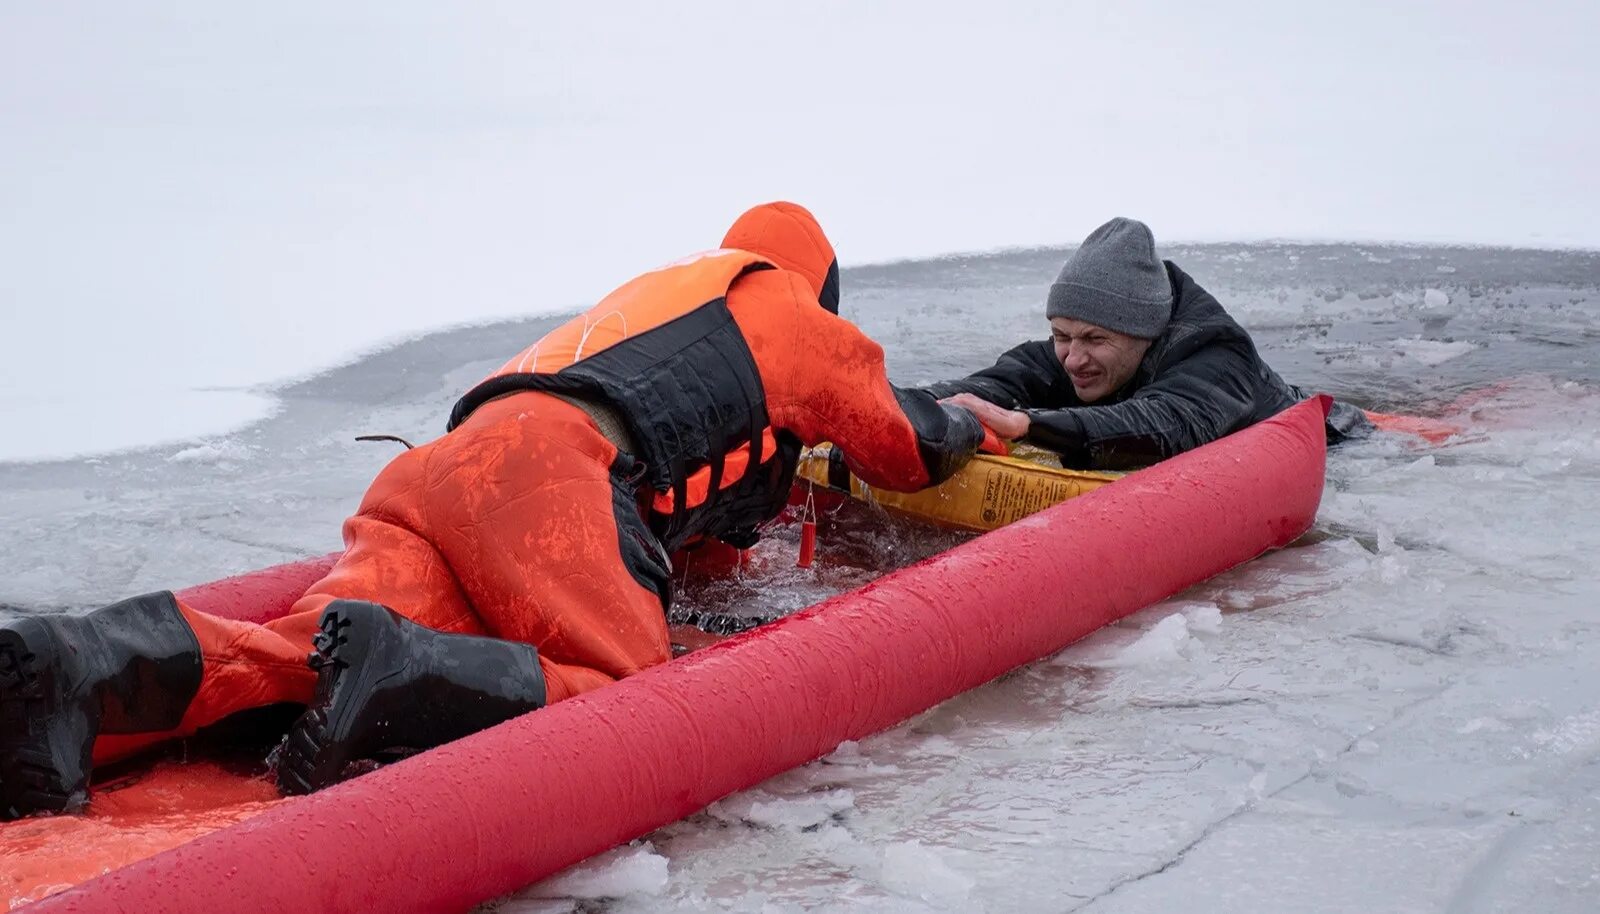 Спасение провалившегося под лед. Человек провалился под лед.